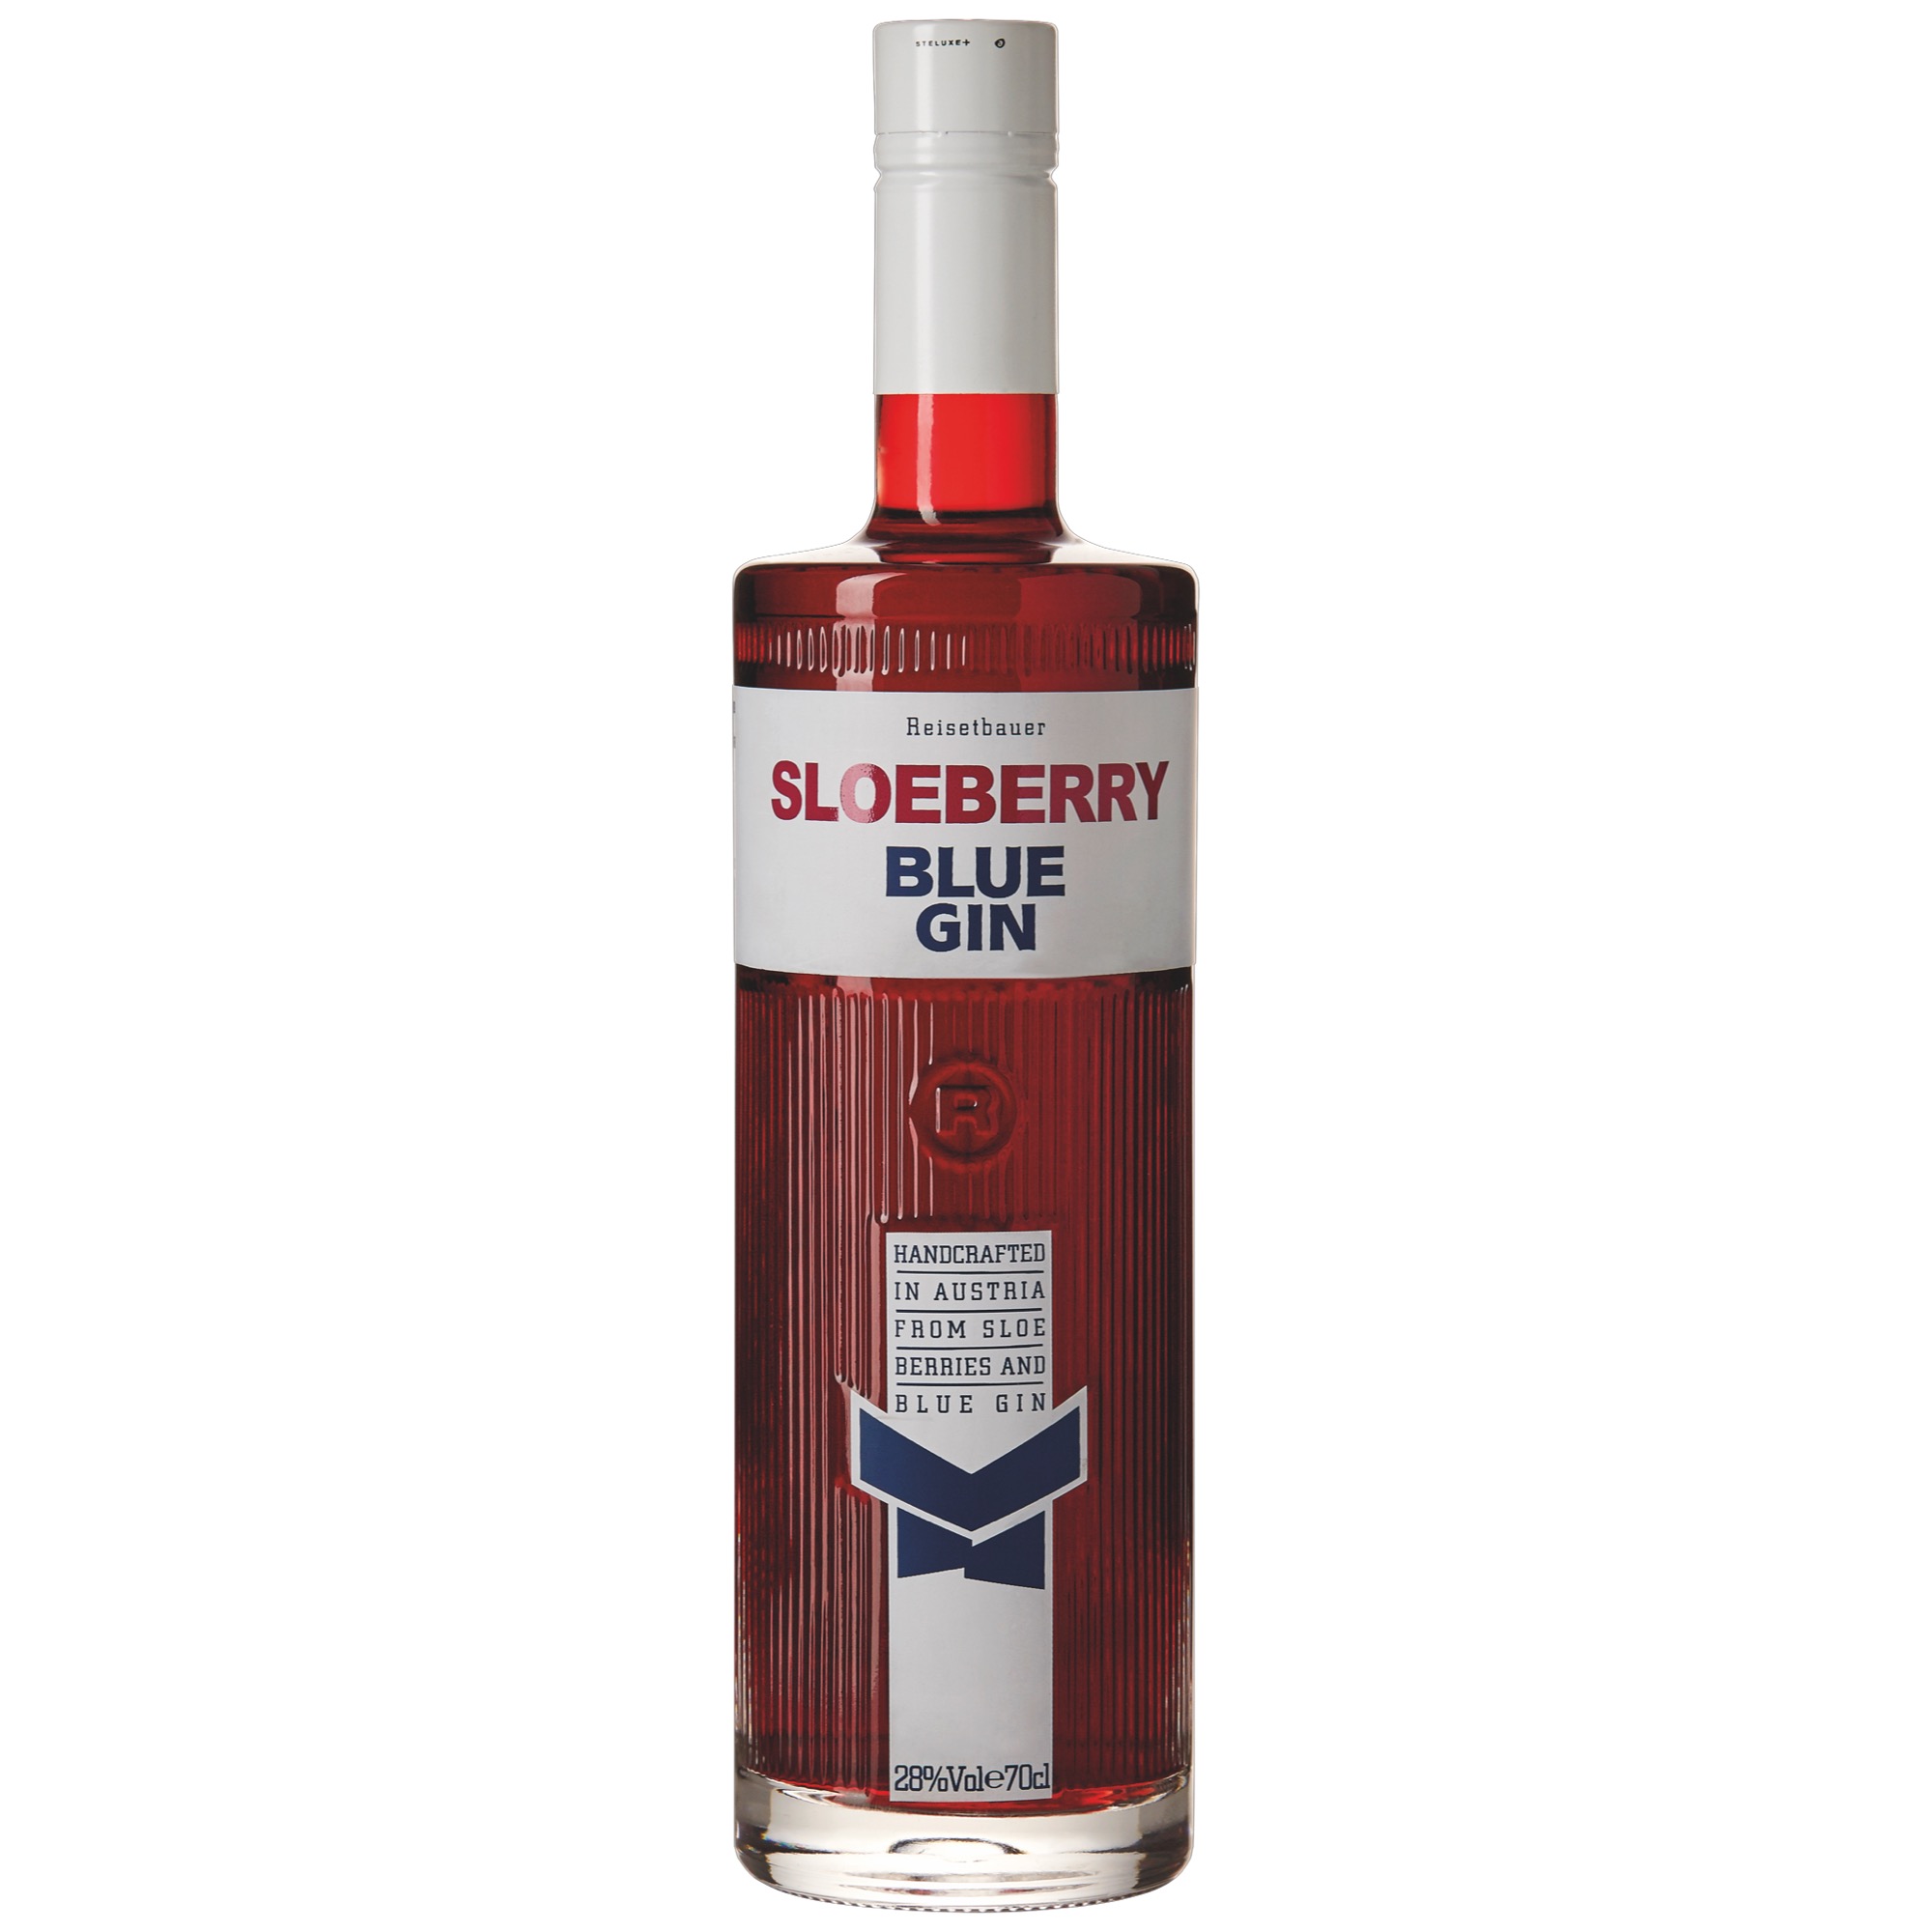 Reisetbauer Sloeberry Blue Gin 28% 0,7l